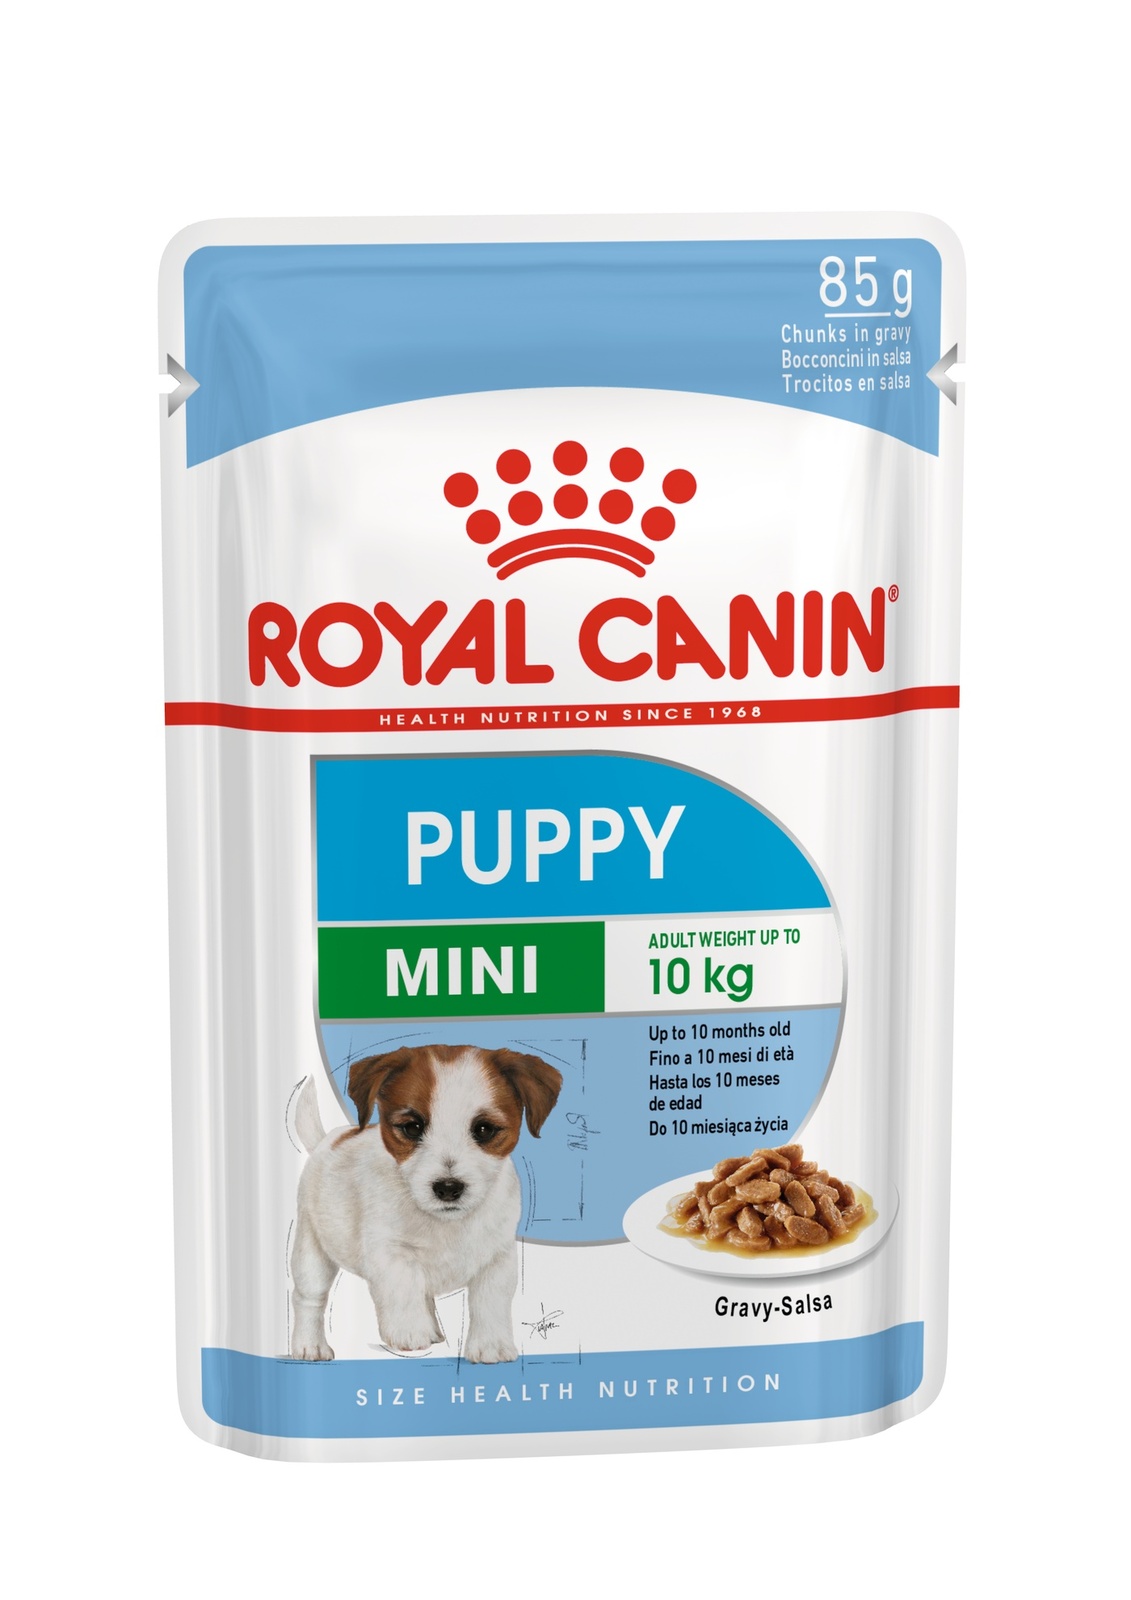 Royal Canin кусочки в соусе для щенков малых пород (85 г)